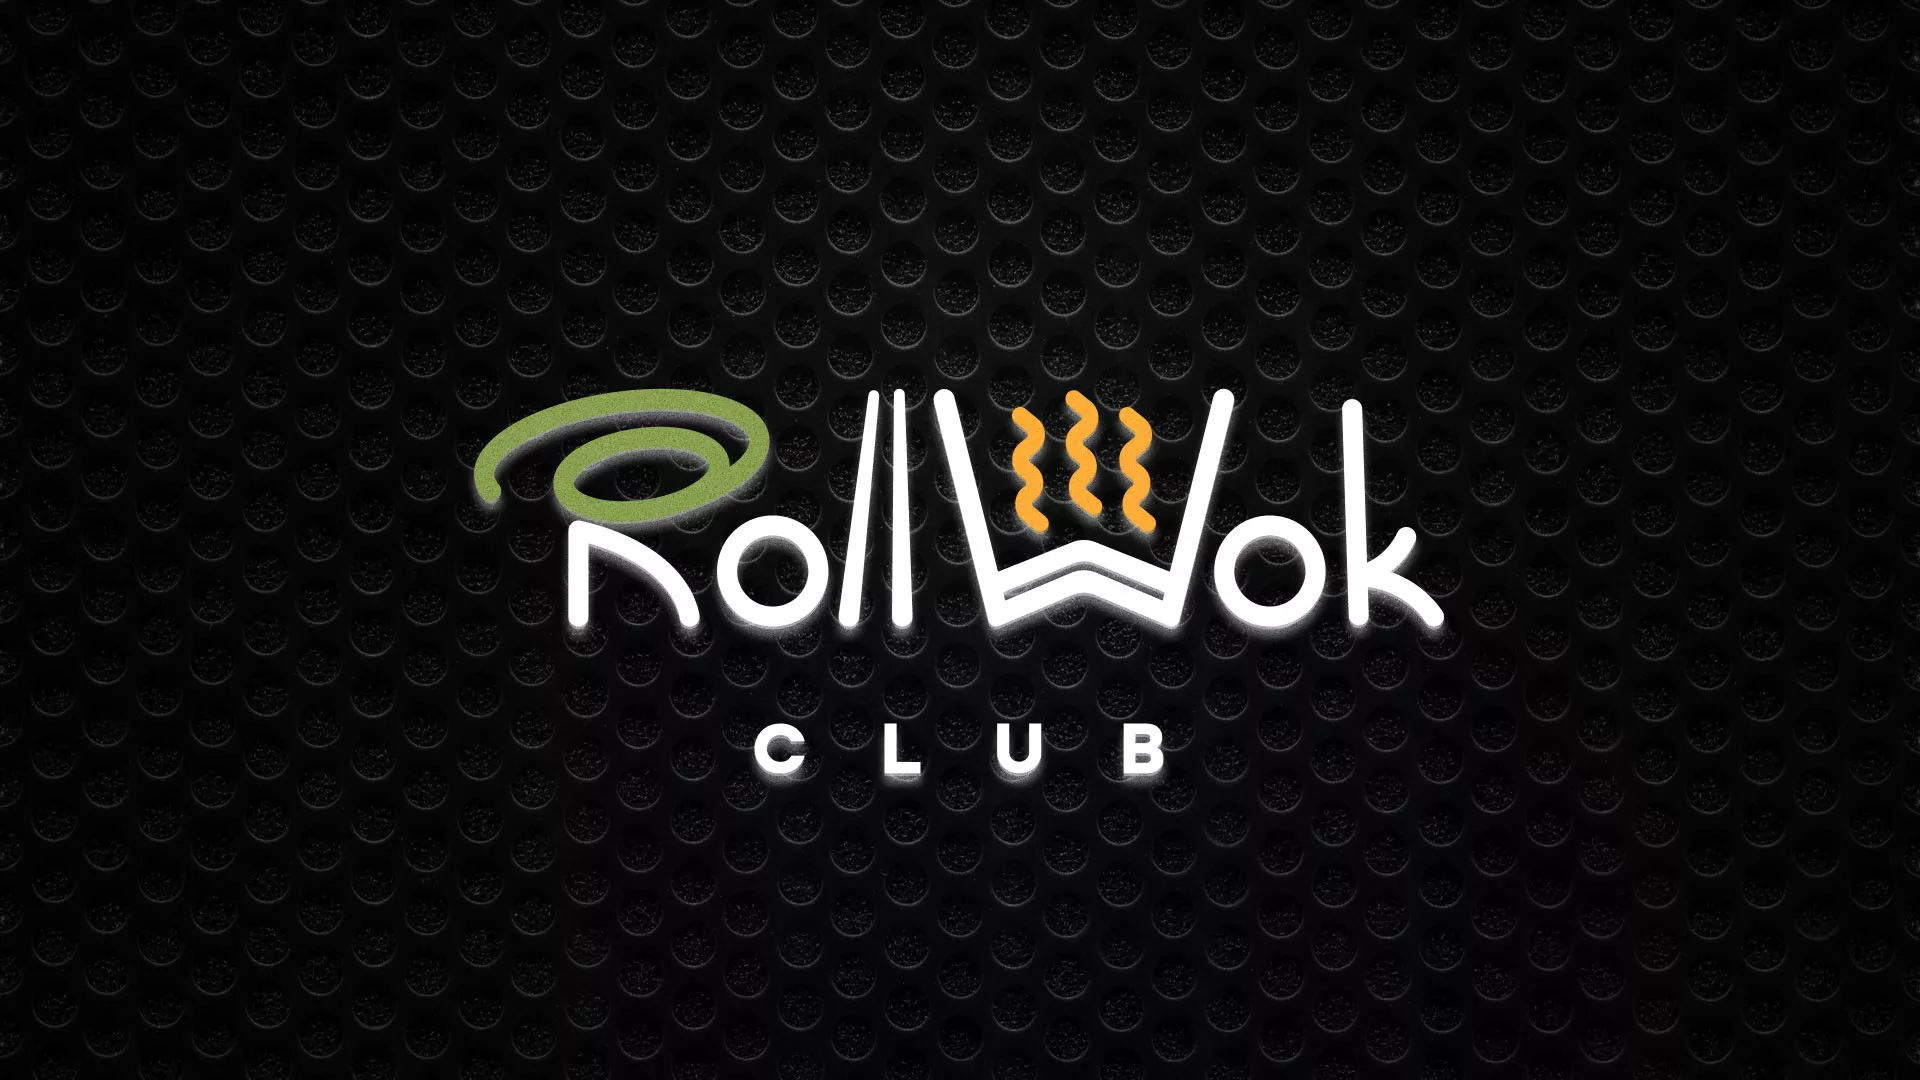 Брендирование торговых точек суши-бара «Roll Wok Club» в Южно-Сахалинске